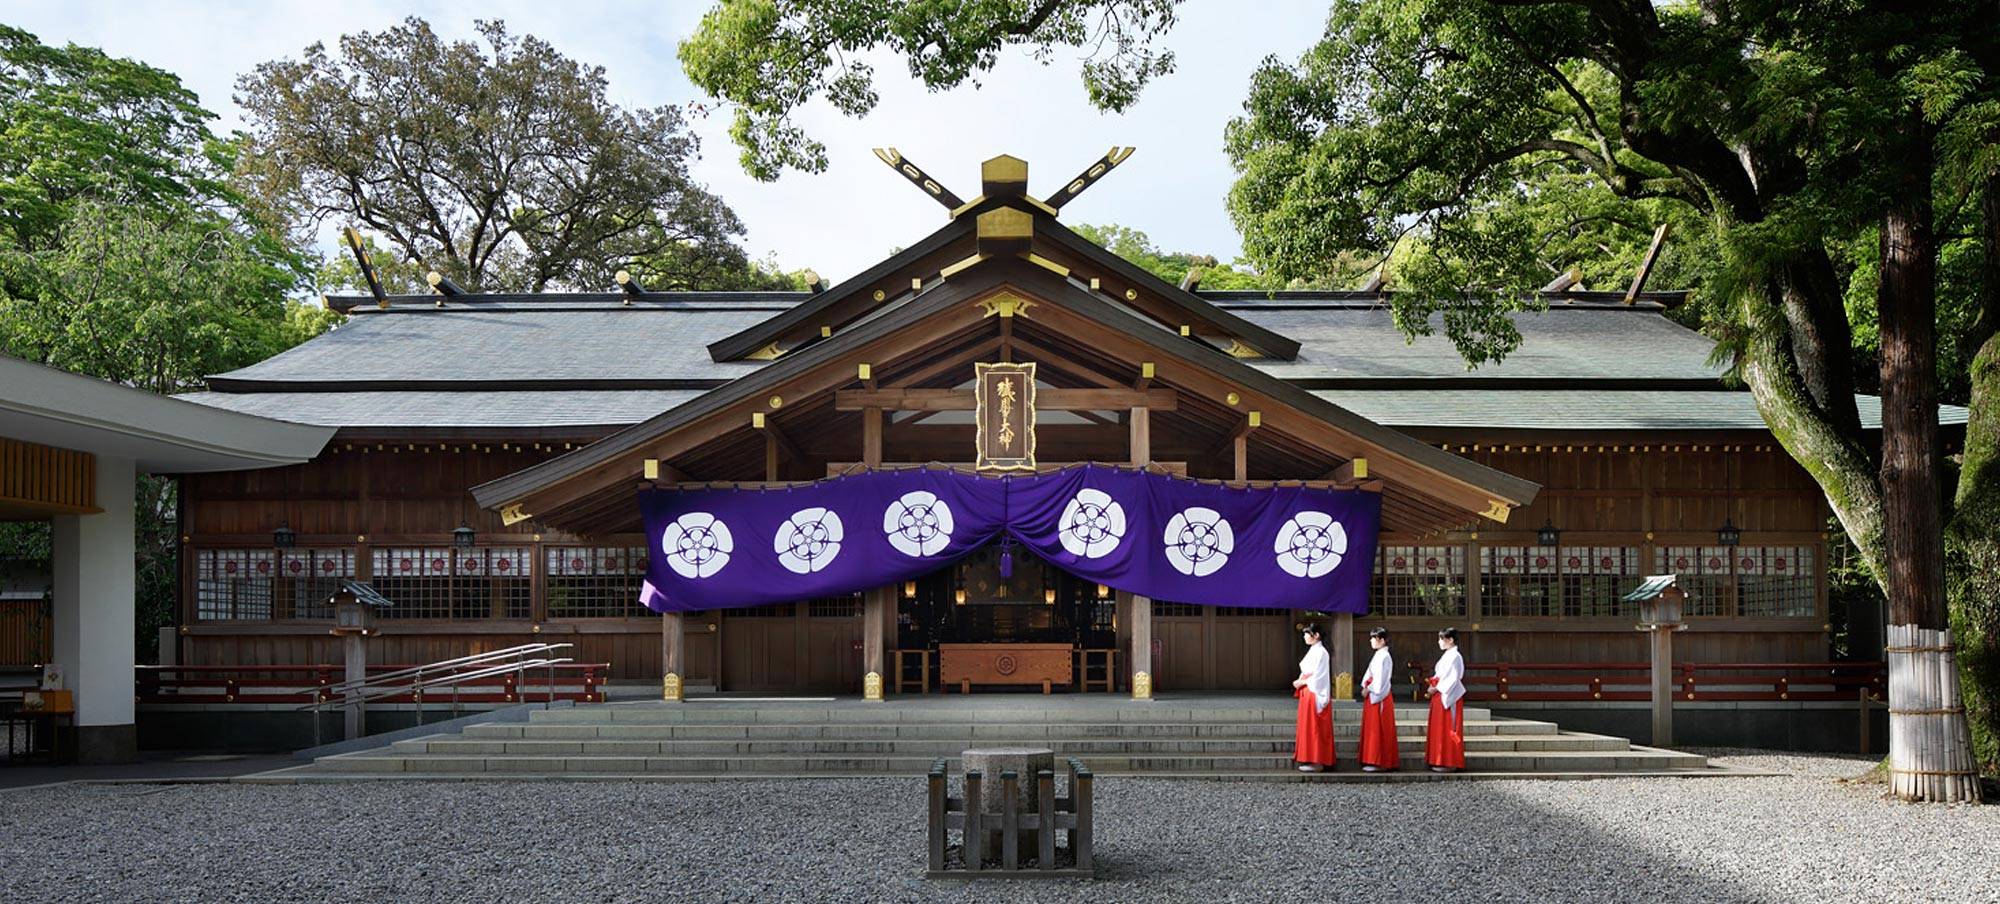 日本神社 猿田彦神社